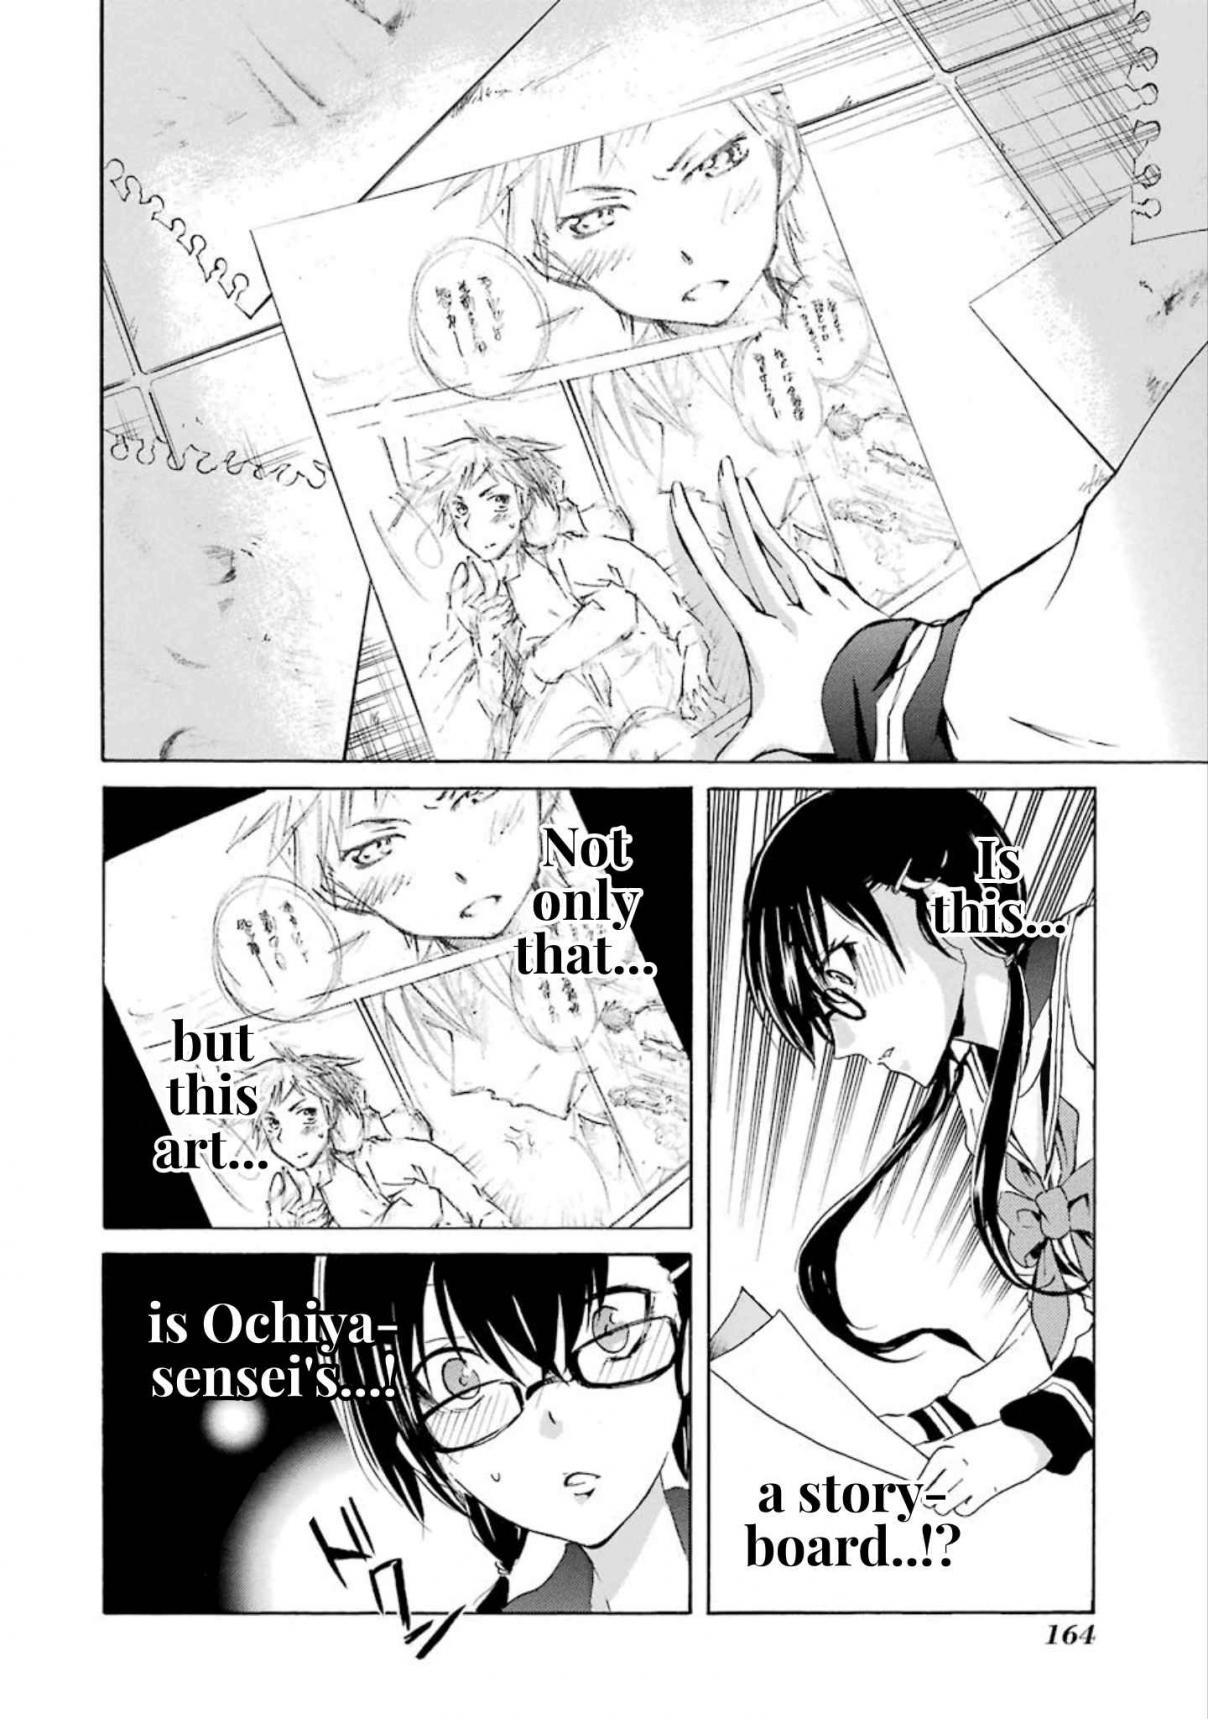 Shonen Shoujo 18 kin Vol. 1 Ch. 8